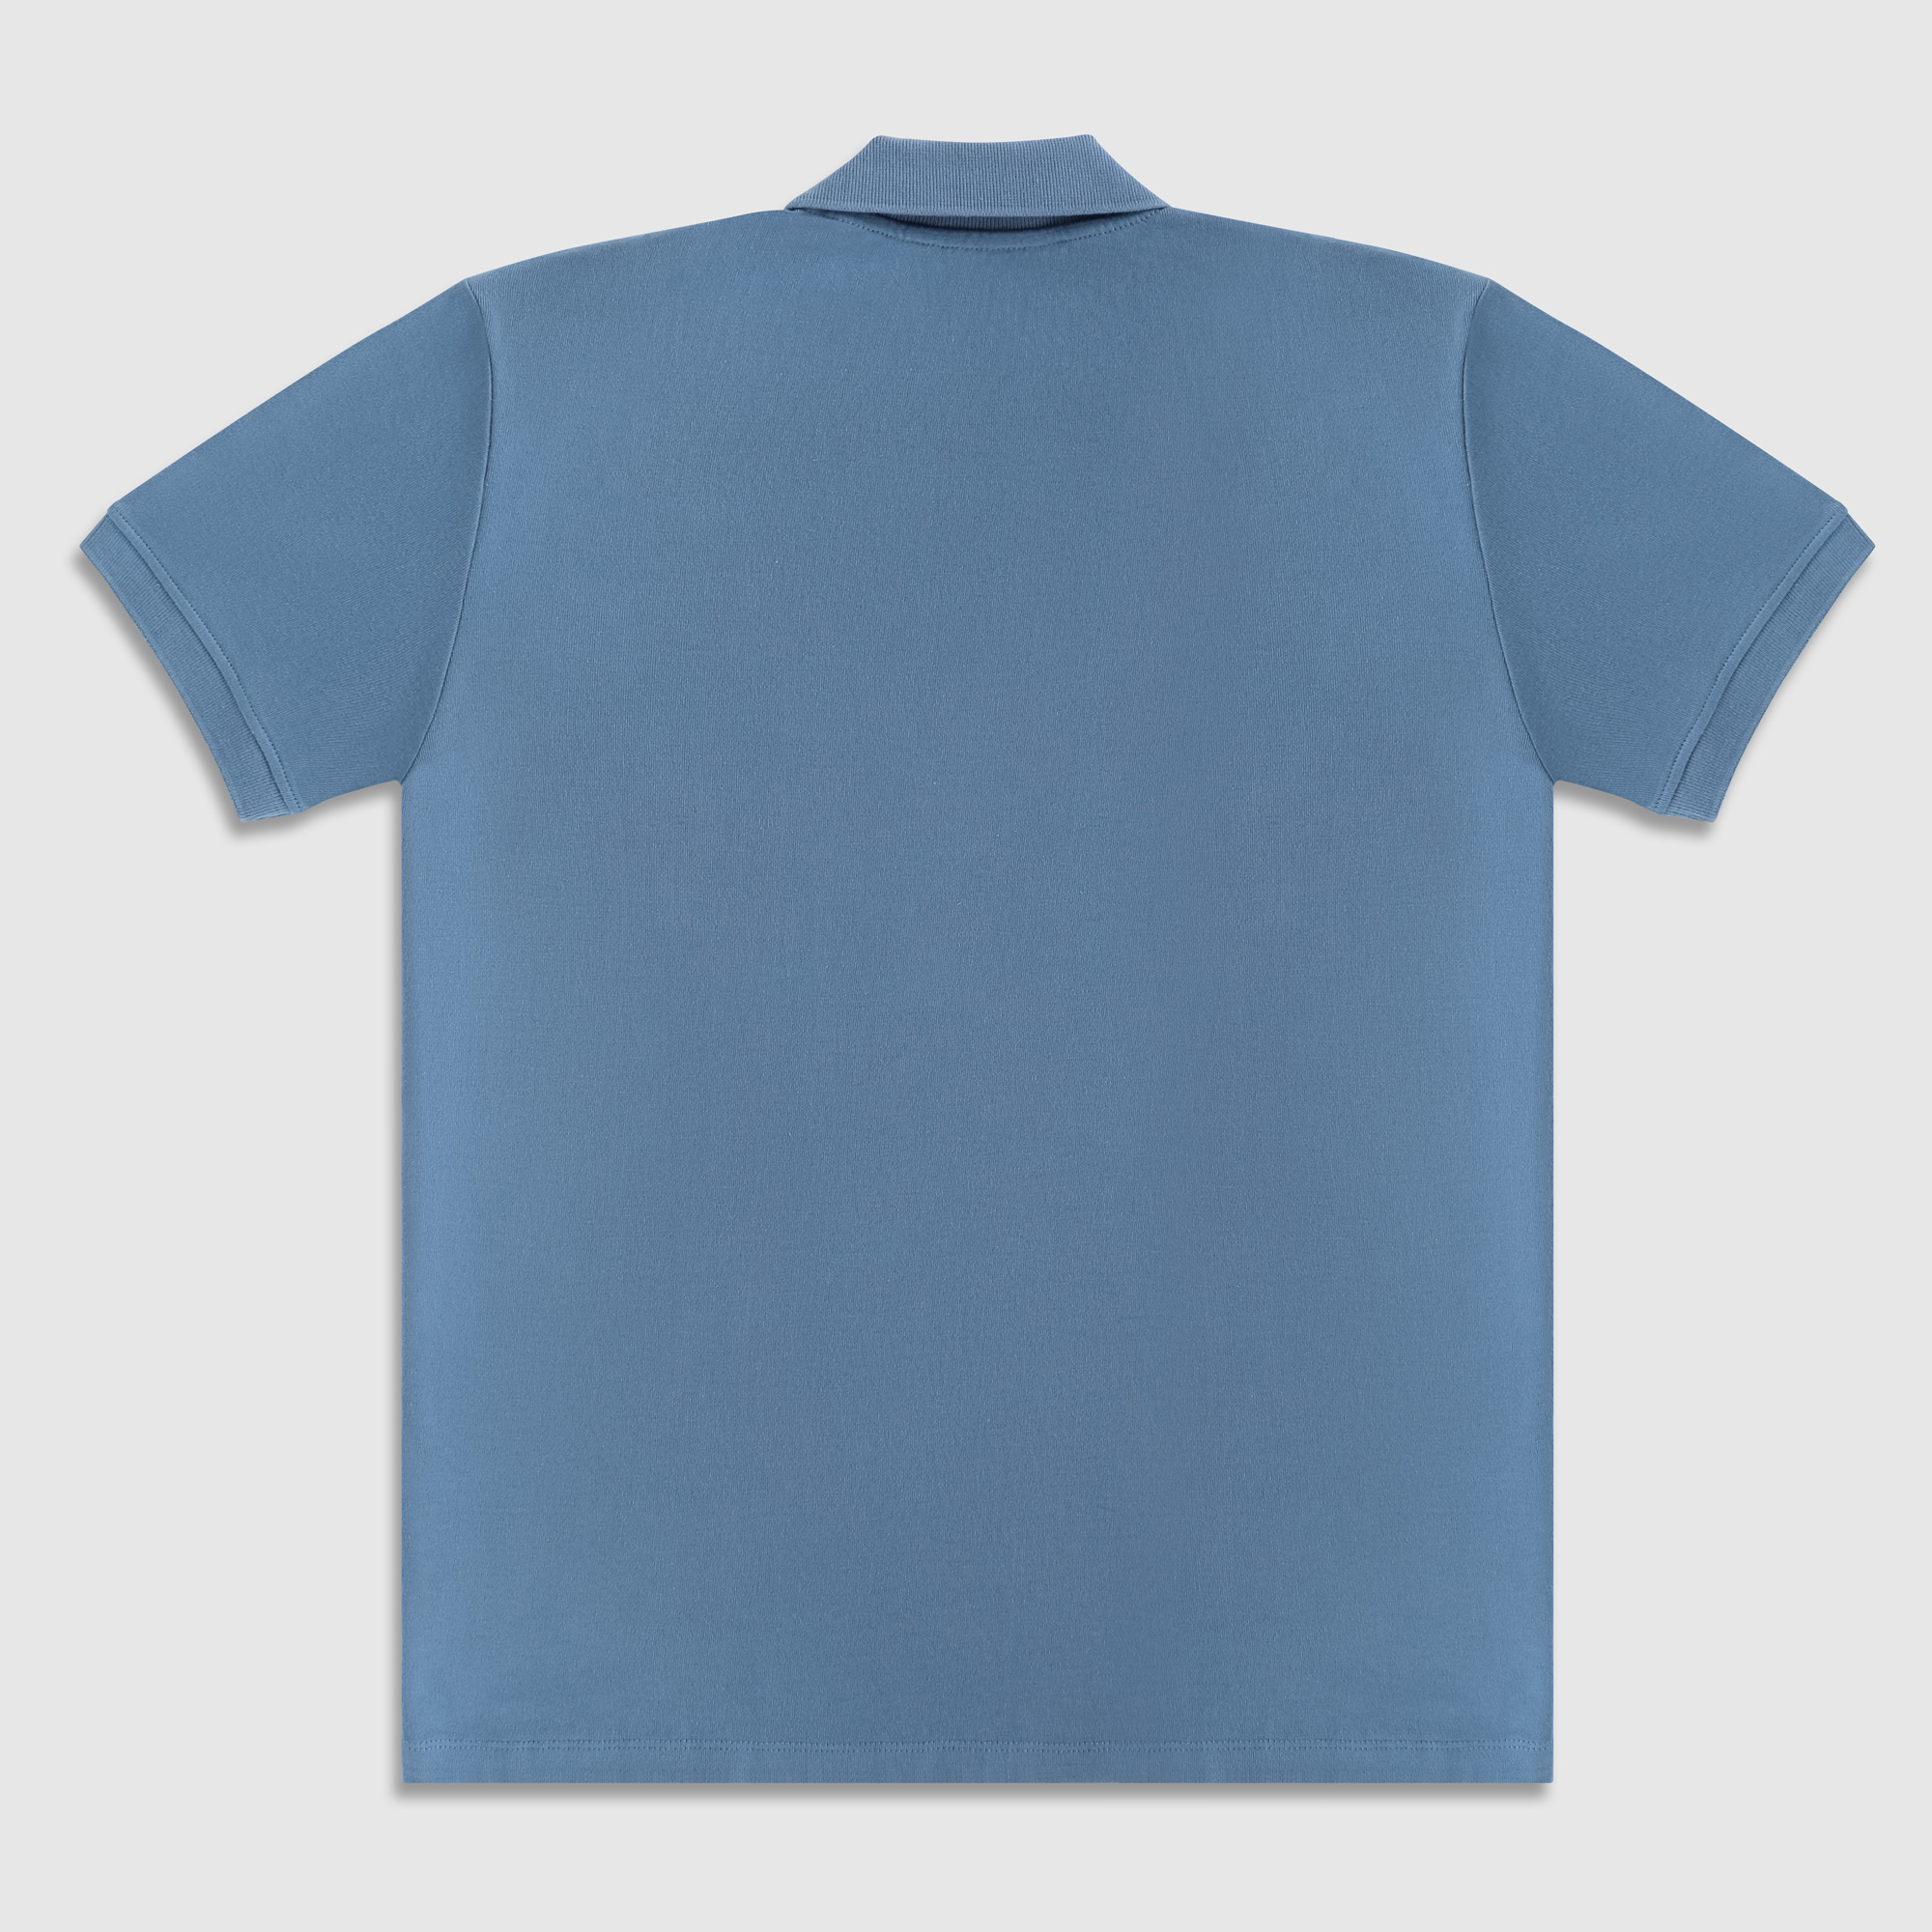 Рубашка мужская Diva Teks поло голубая, цвет голубой, размер 2XL - фото 2